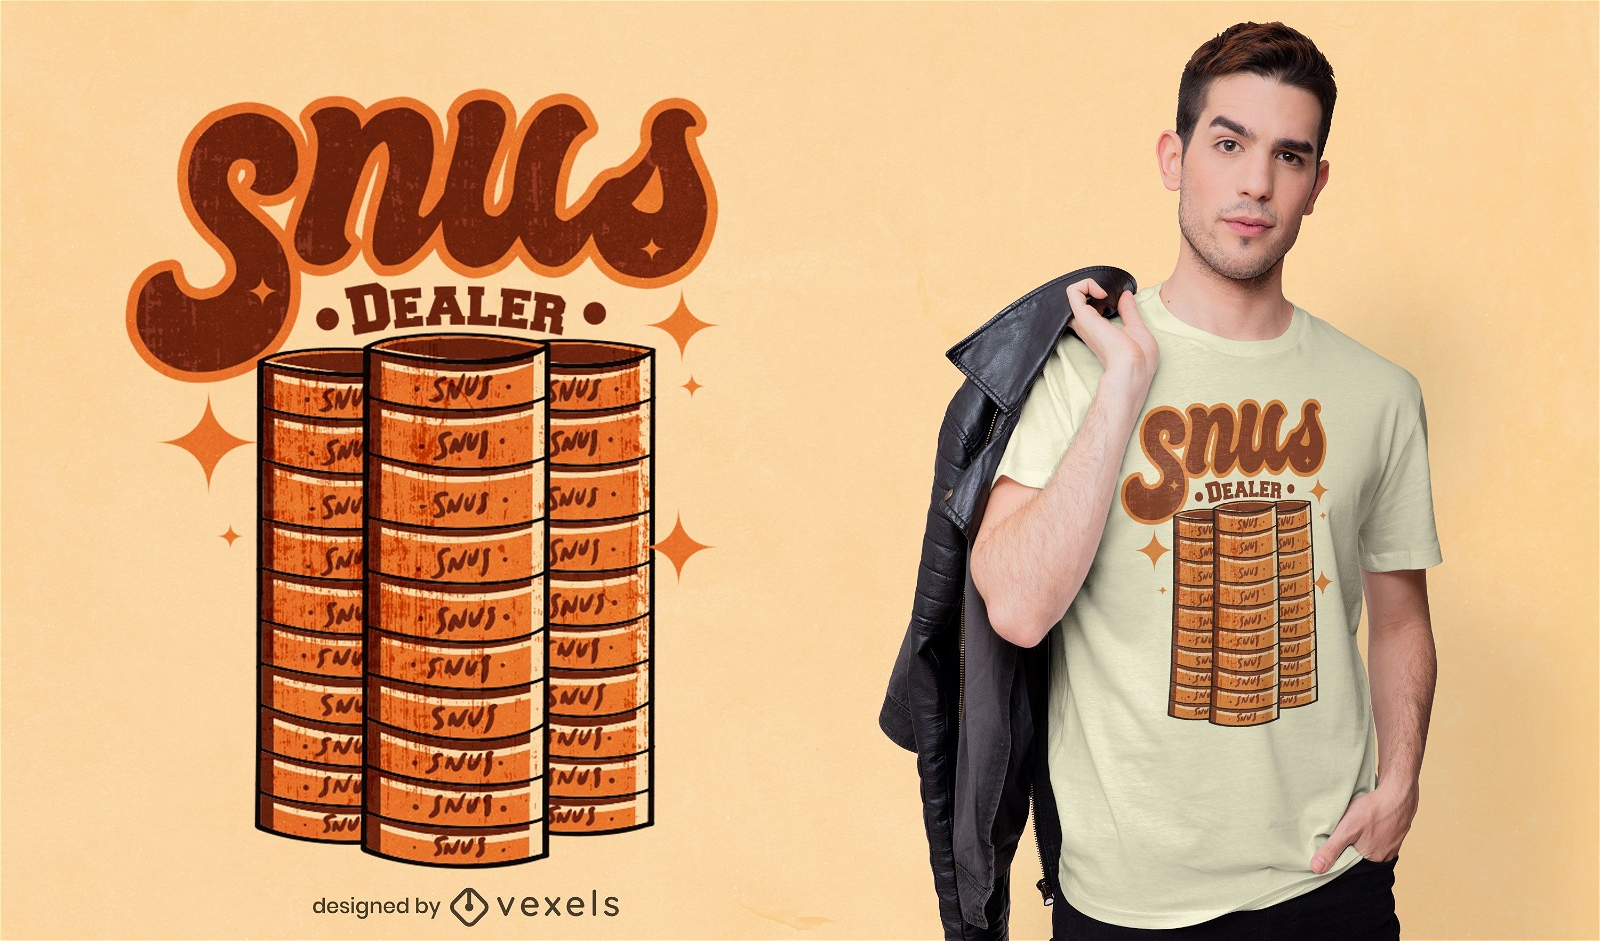 Snus dealer t-shirt design